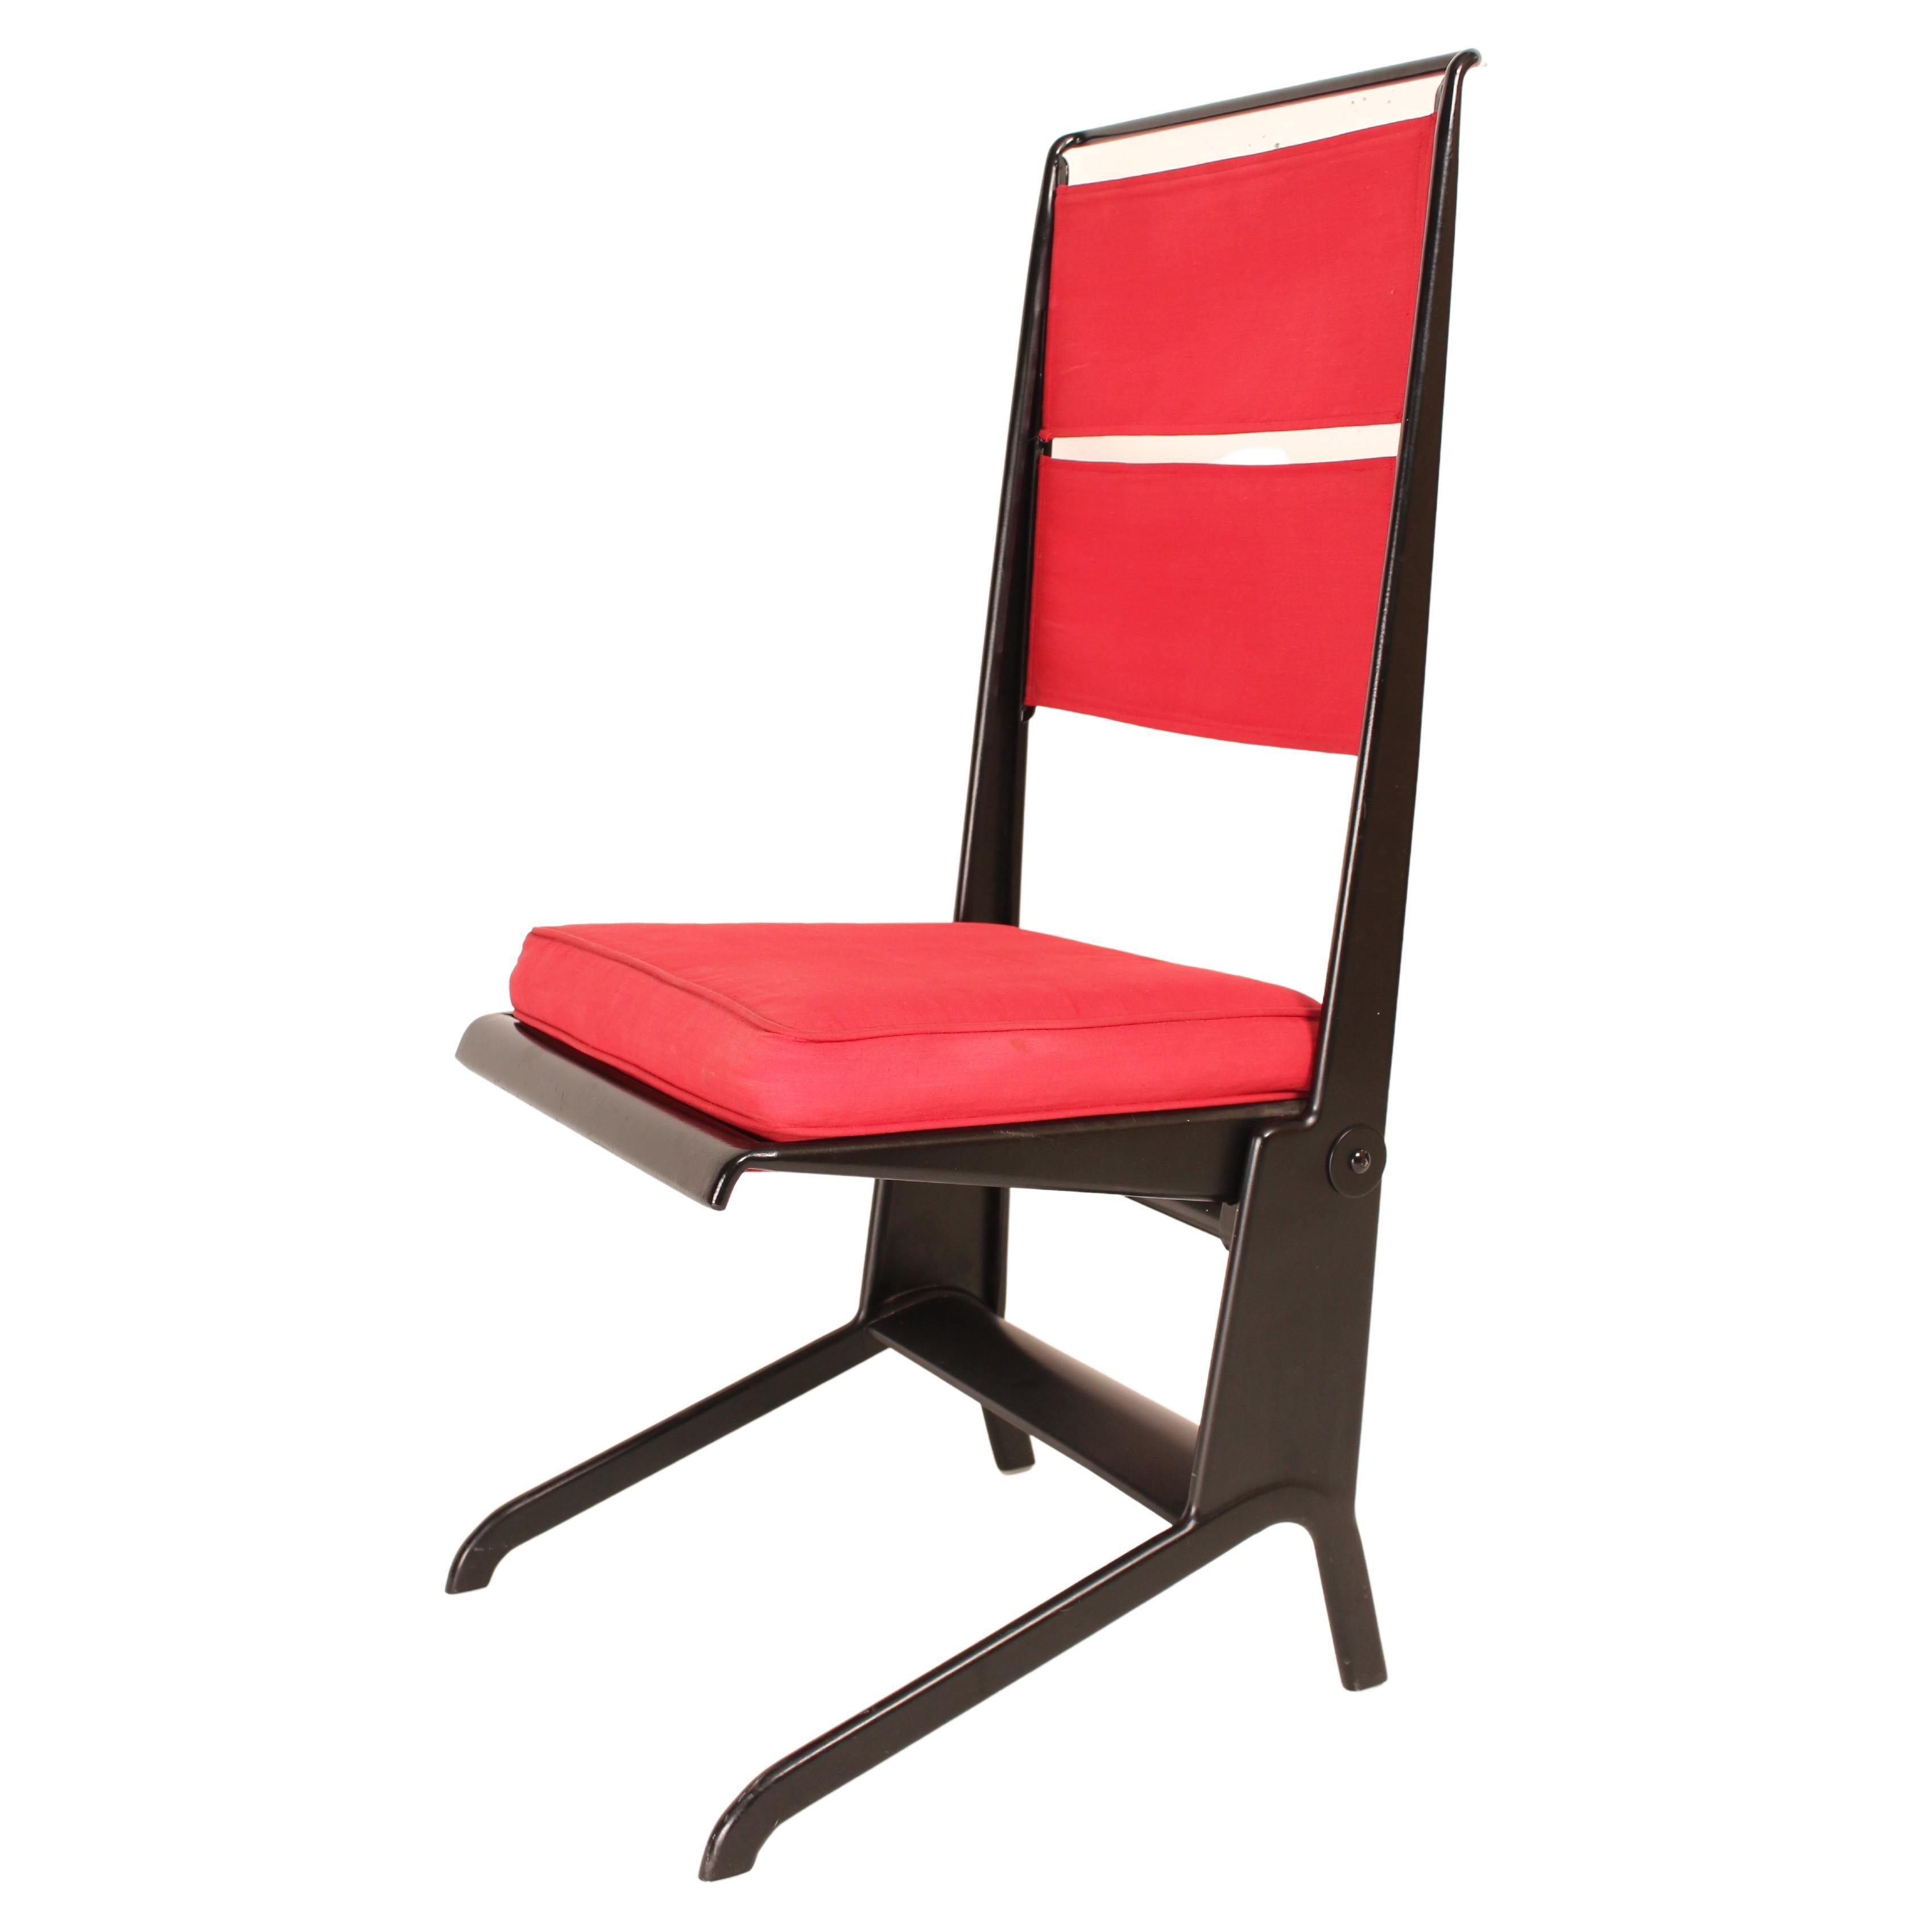 Chaise pliante Jean Prouvé Design/One 1930, fabriquée par Tecta, 1983